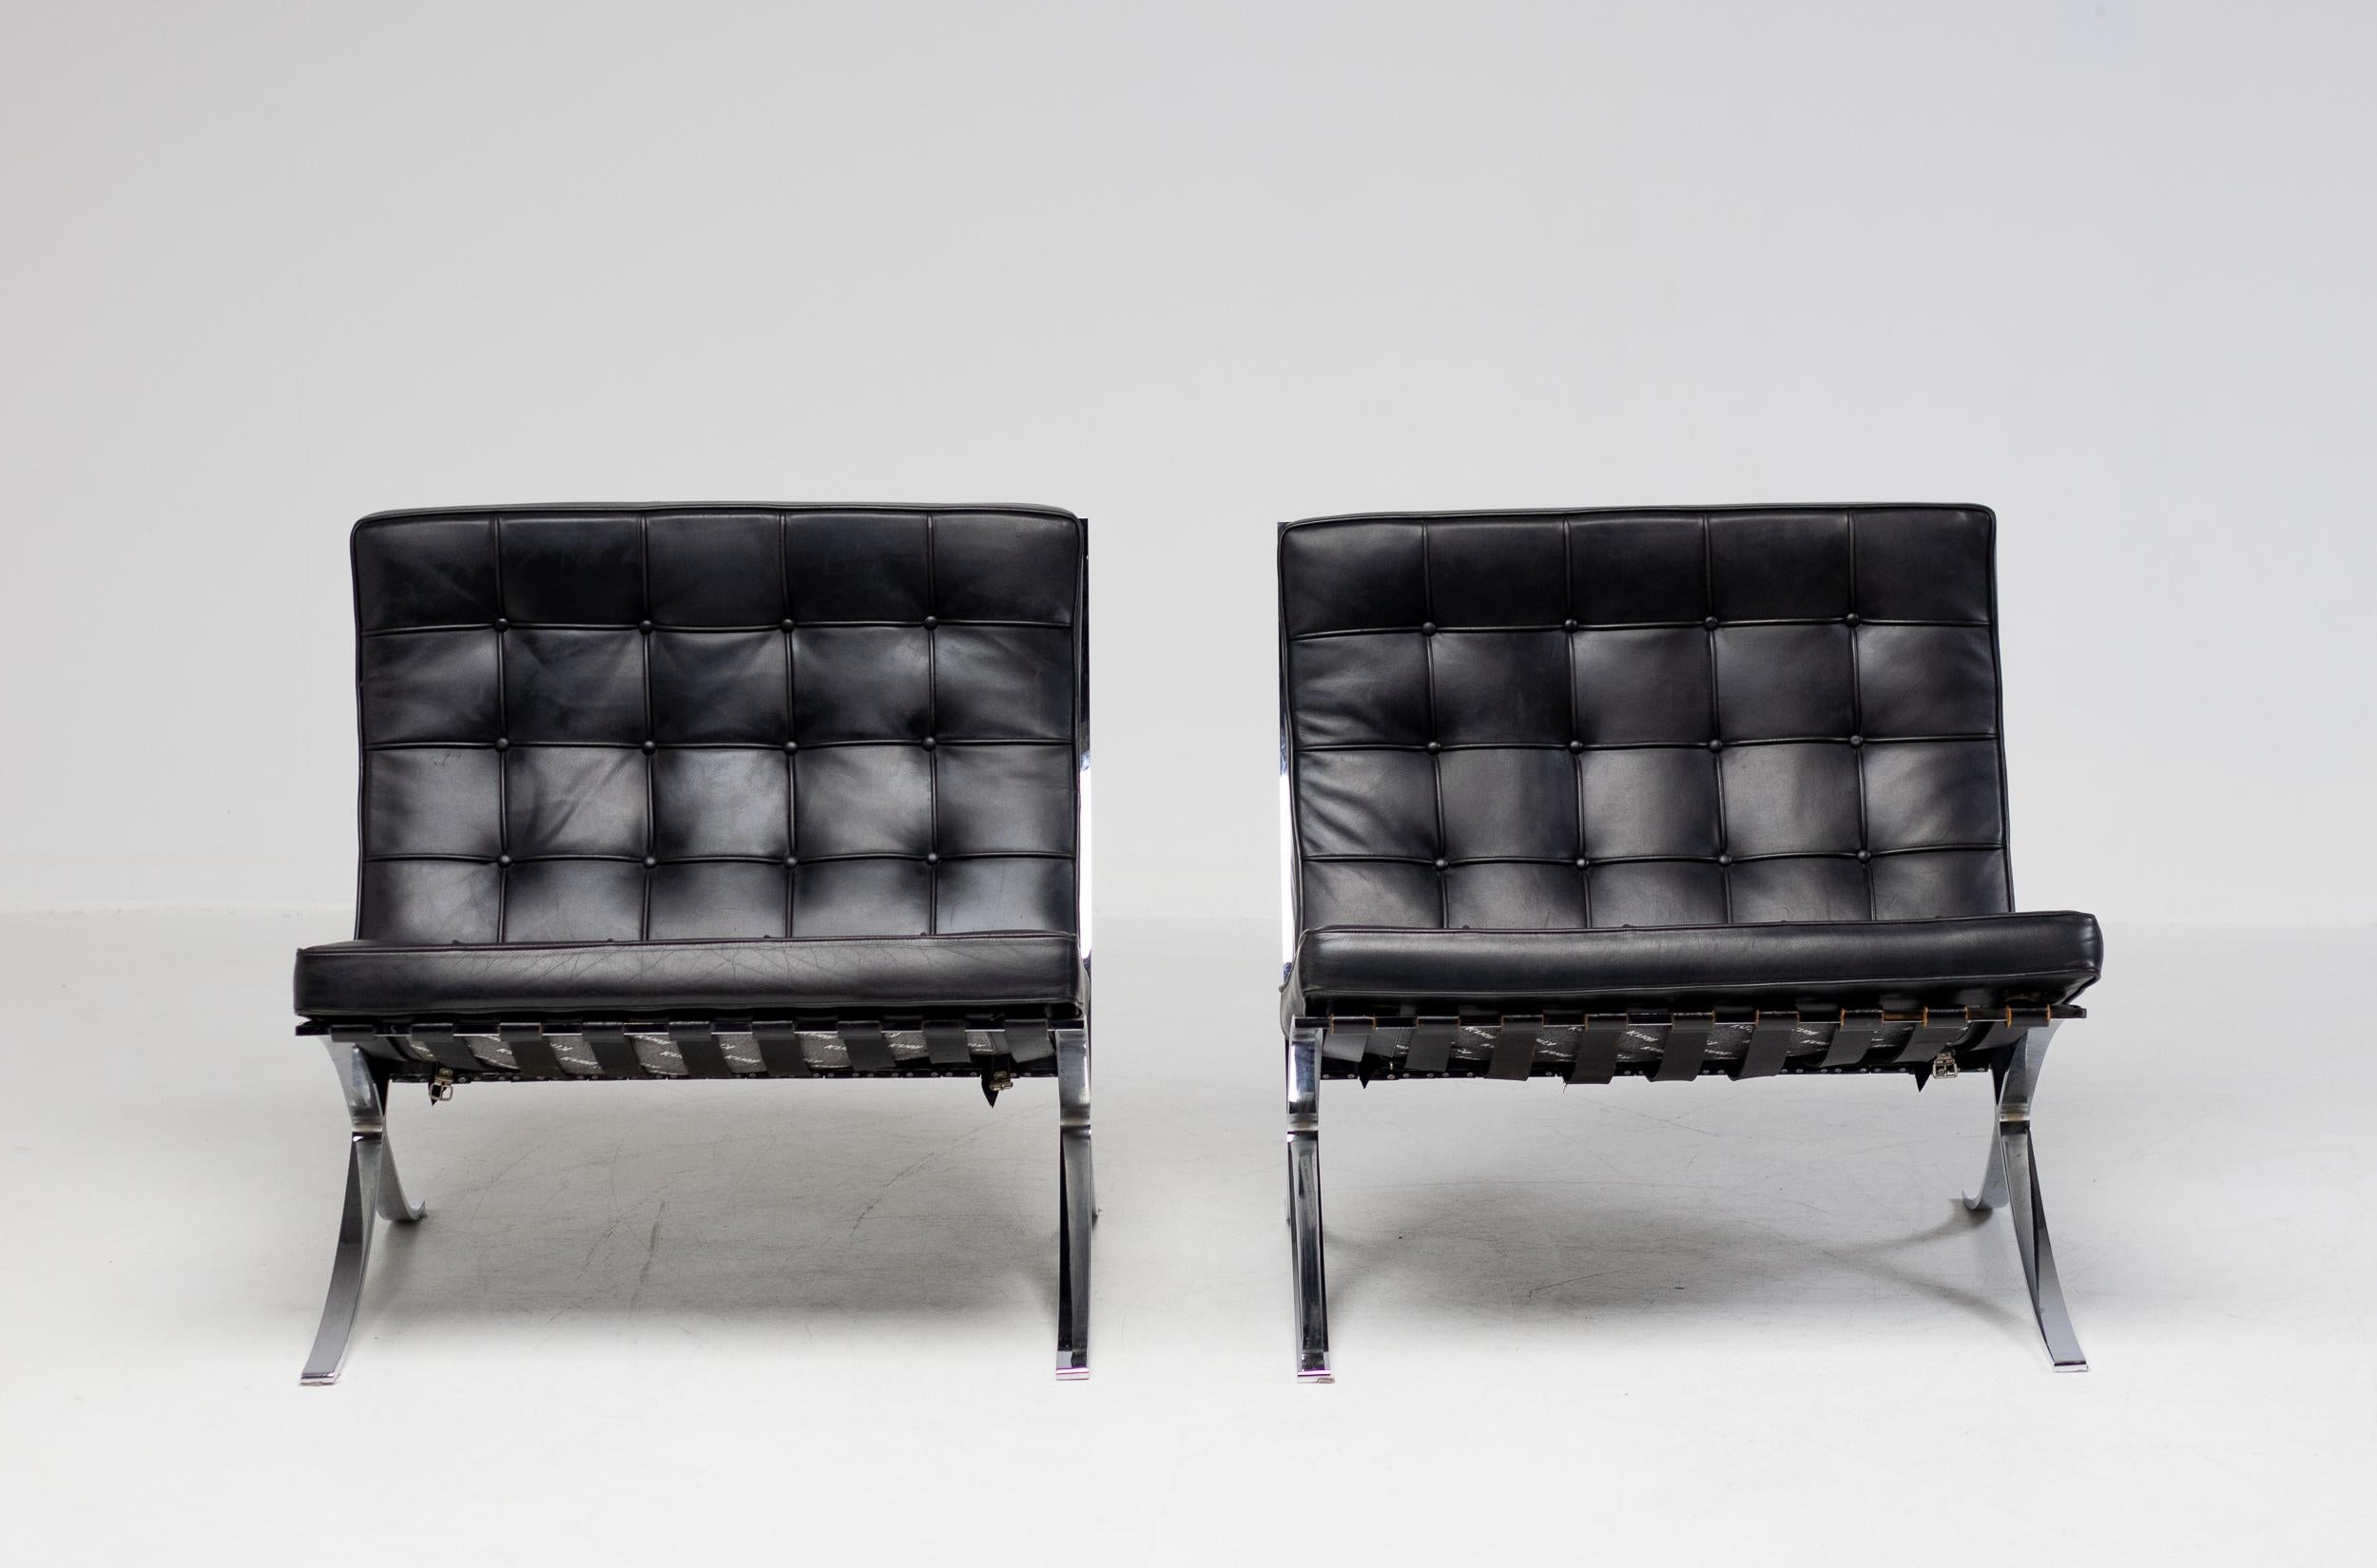 Ein Paar Barcelona-Stühle von Mies Van der Rohe für Knoll International in schwarzem Leder.
Graviert mit Unterschrift im Rahmen und mit Knoll-Logo an der Unterseite der Kissen gekennzeichnet.
Wunderbarer Vintage-Zustand.
Der Preis gilt für ein